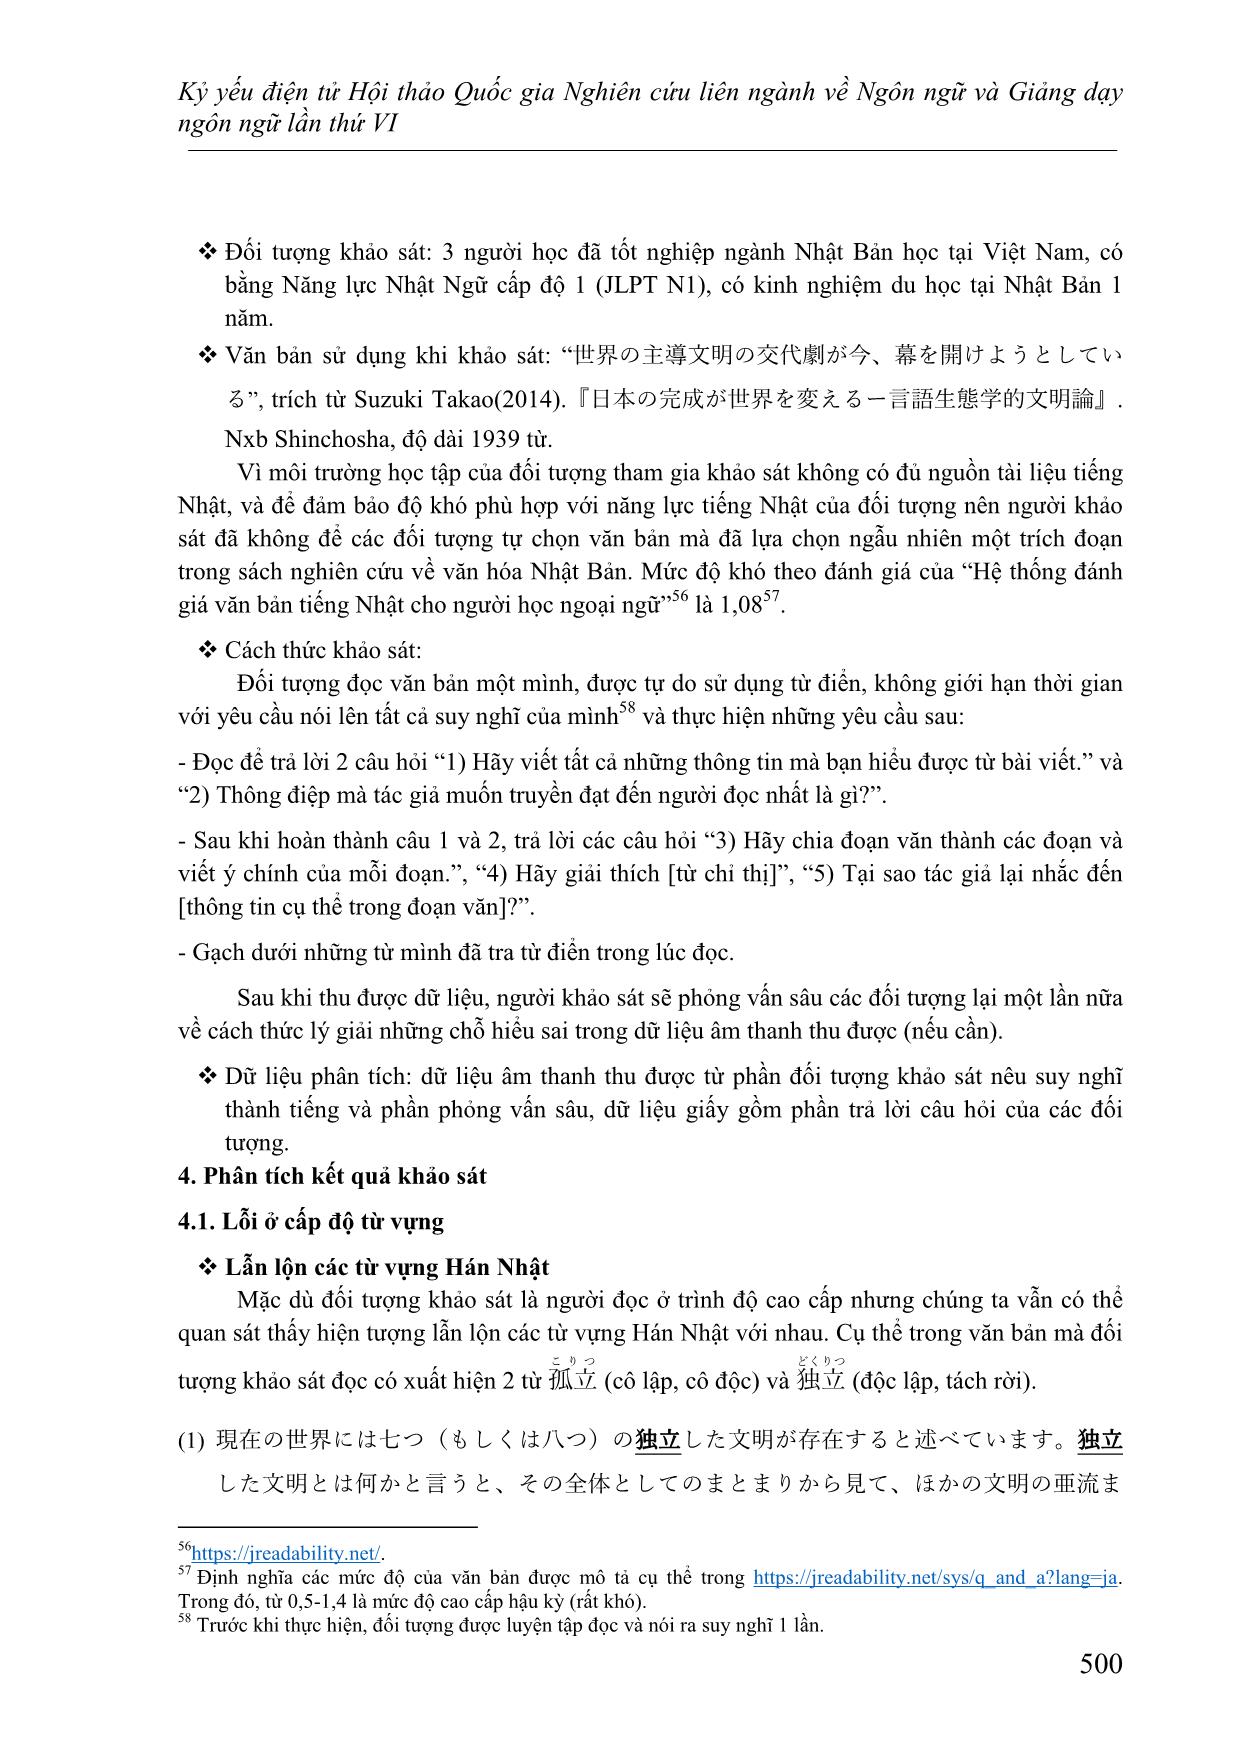 Nghiên cứu các lỗi thường gặp của người học Việt Nam ở trình độ cao cấp khi đọc hiểu văn bản tiếng Nhật trang 5